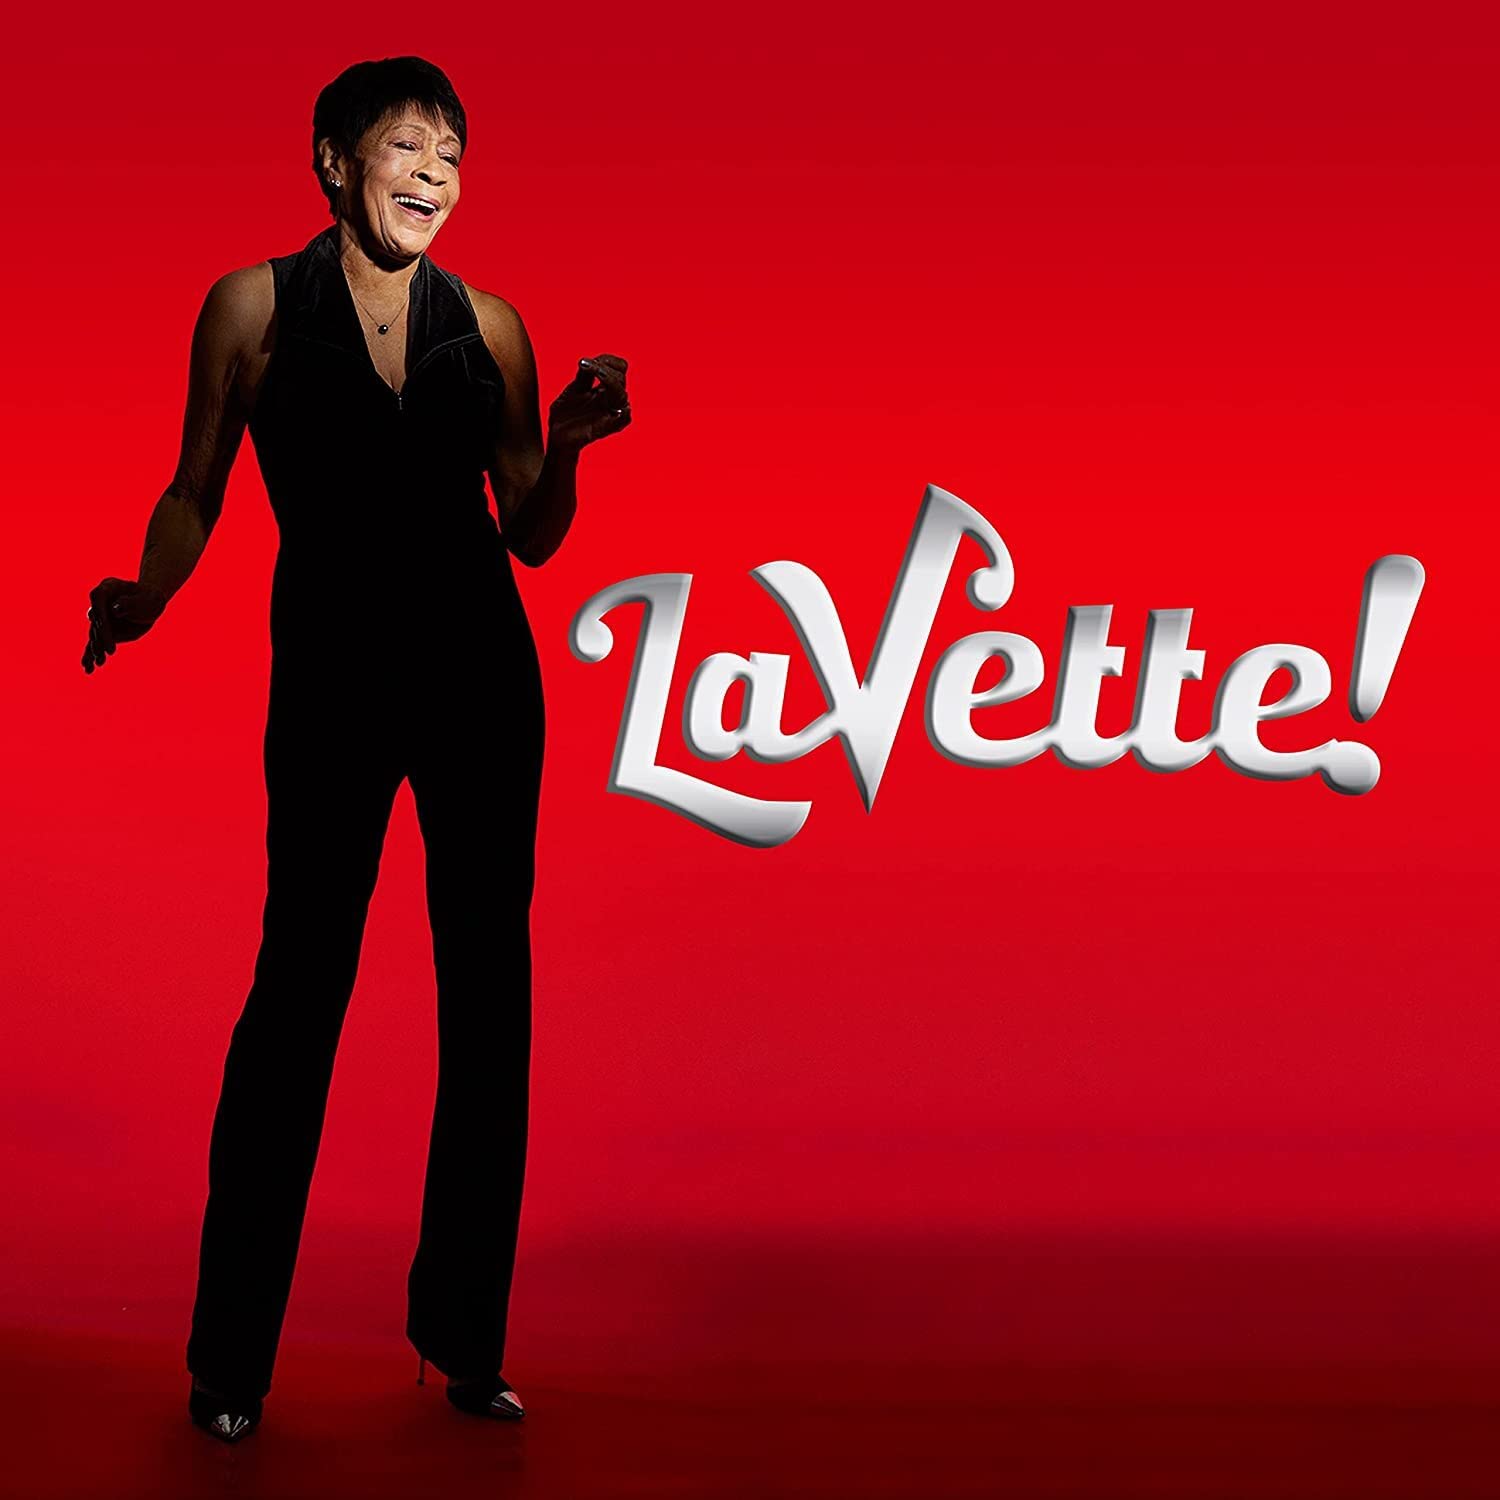 Bettye LaVette - LaVette album cover